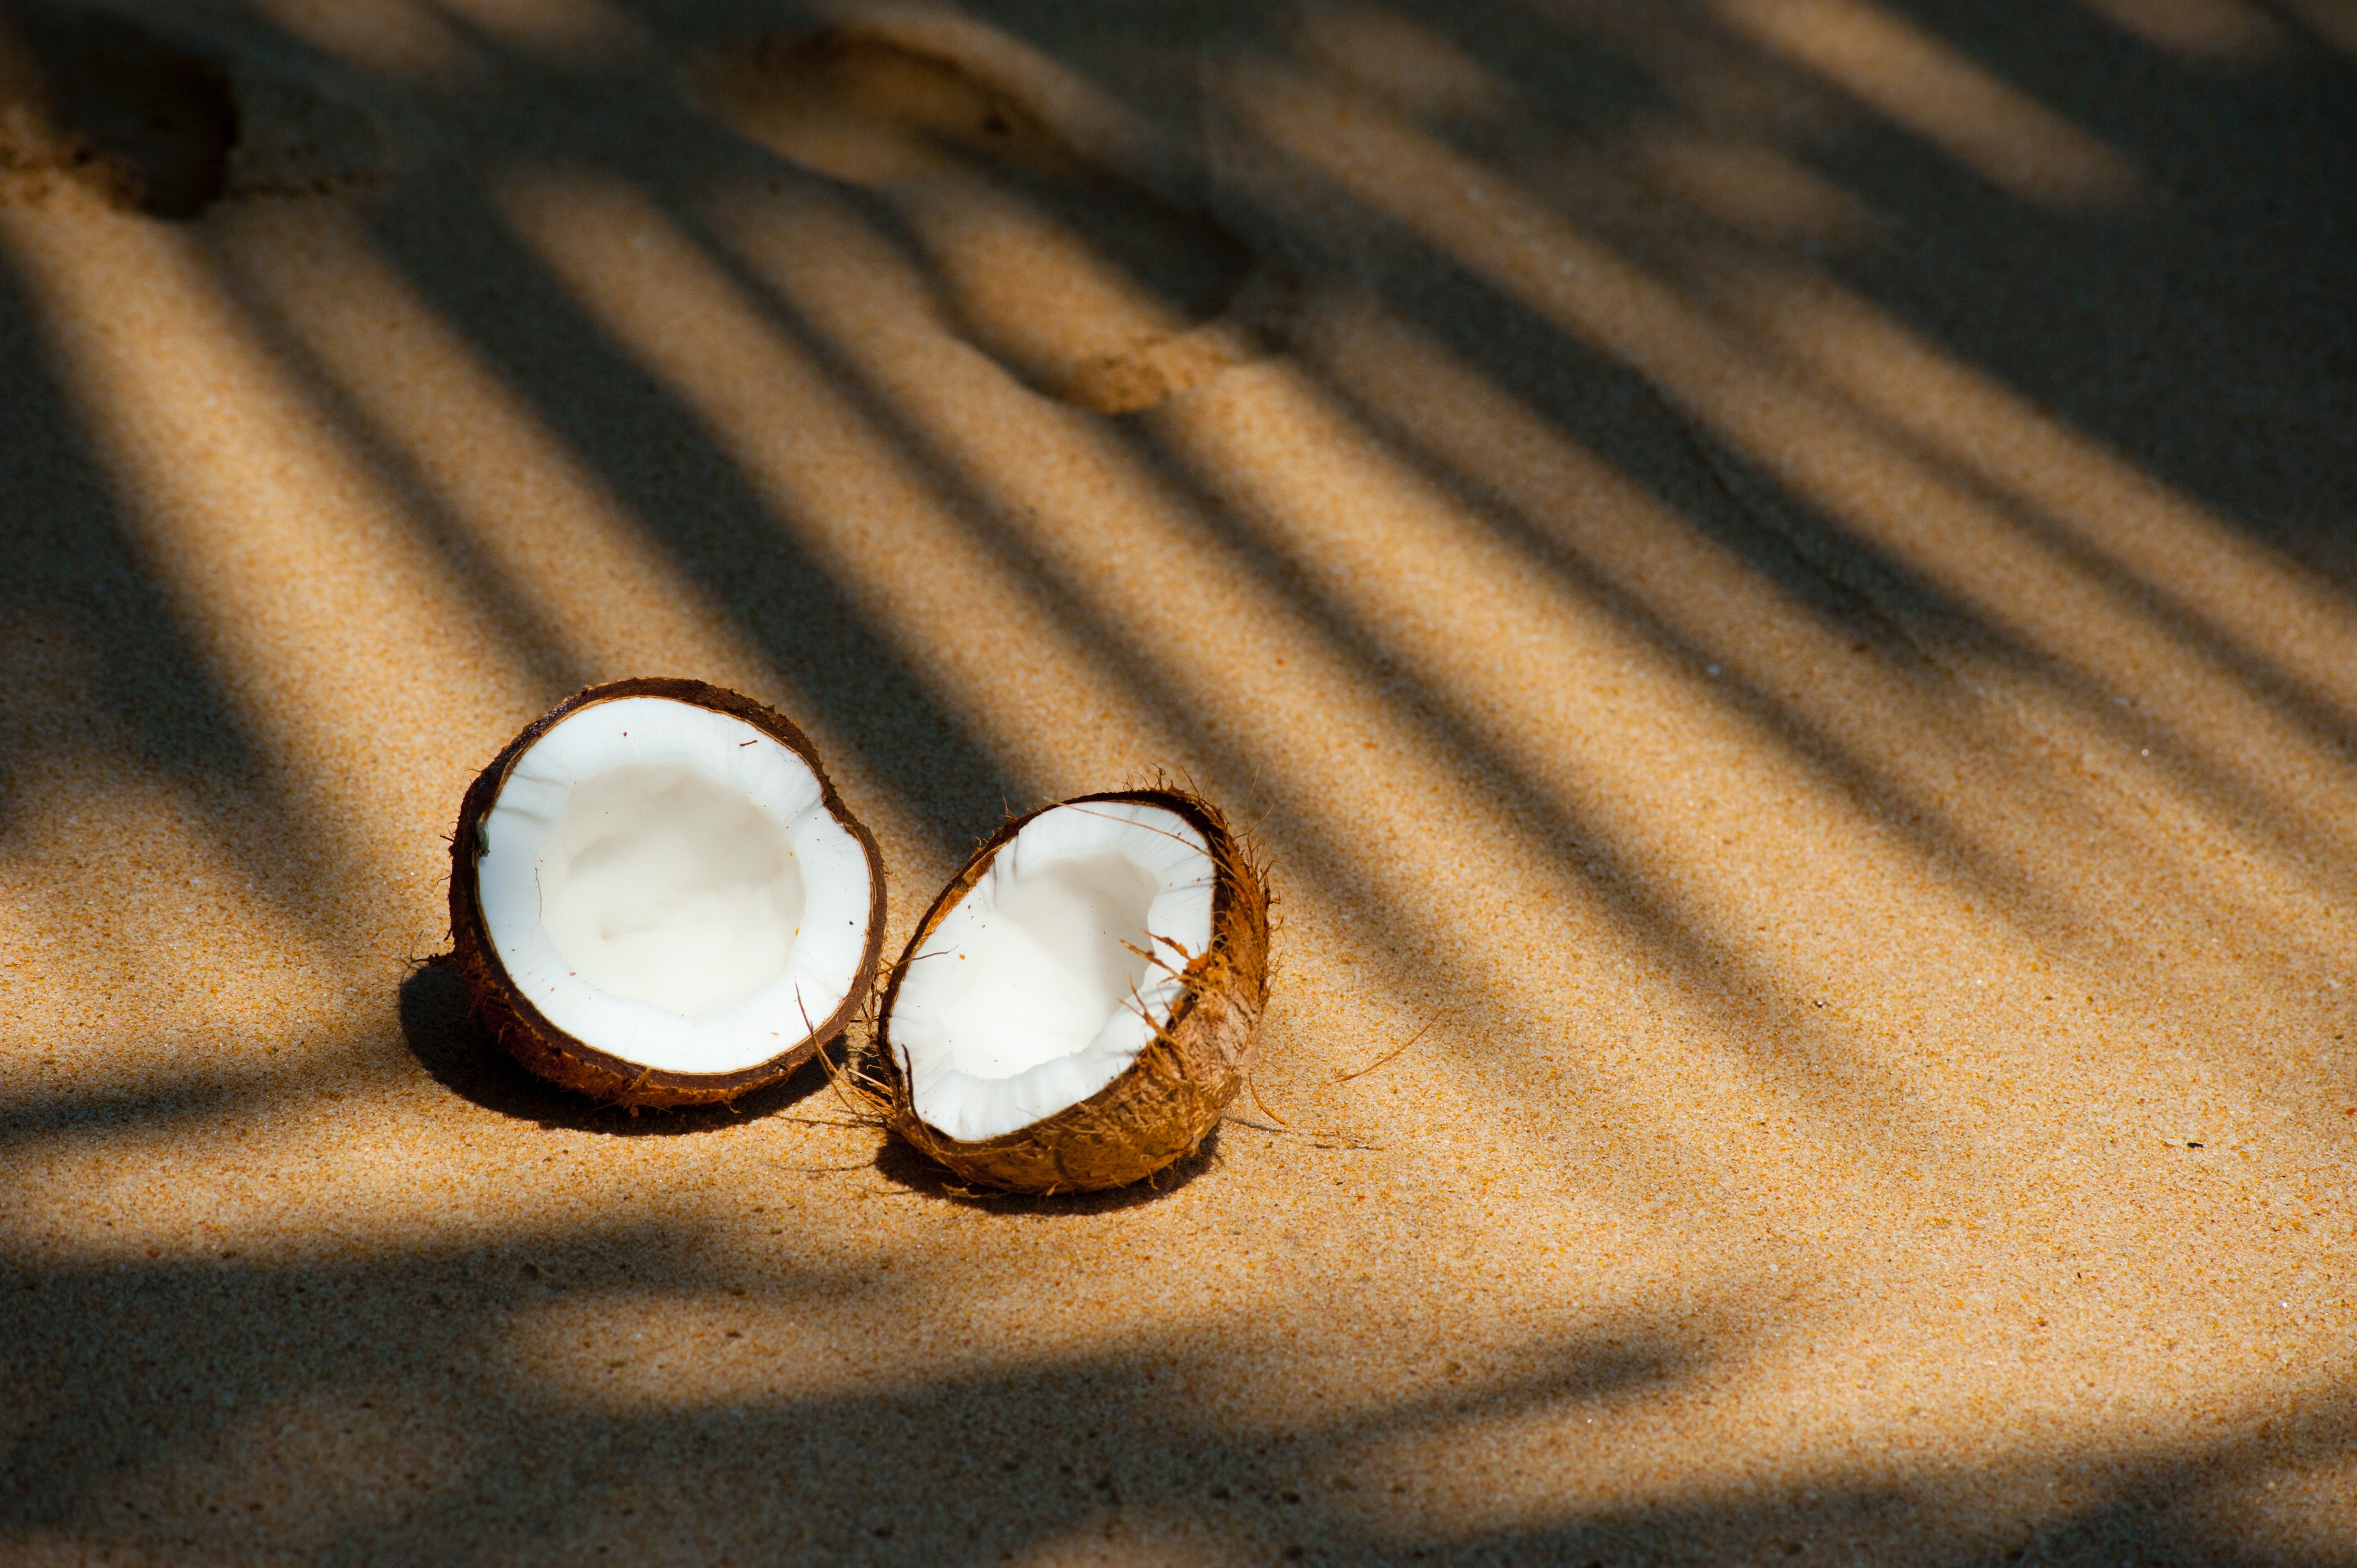 नारियल पानी, खीर, कच्ची गिरी, नारिकेल गोला के चमत्कारी फायदे जानकर हो जाएंगे हैरान…